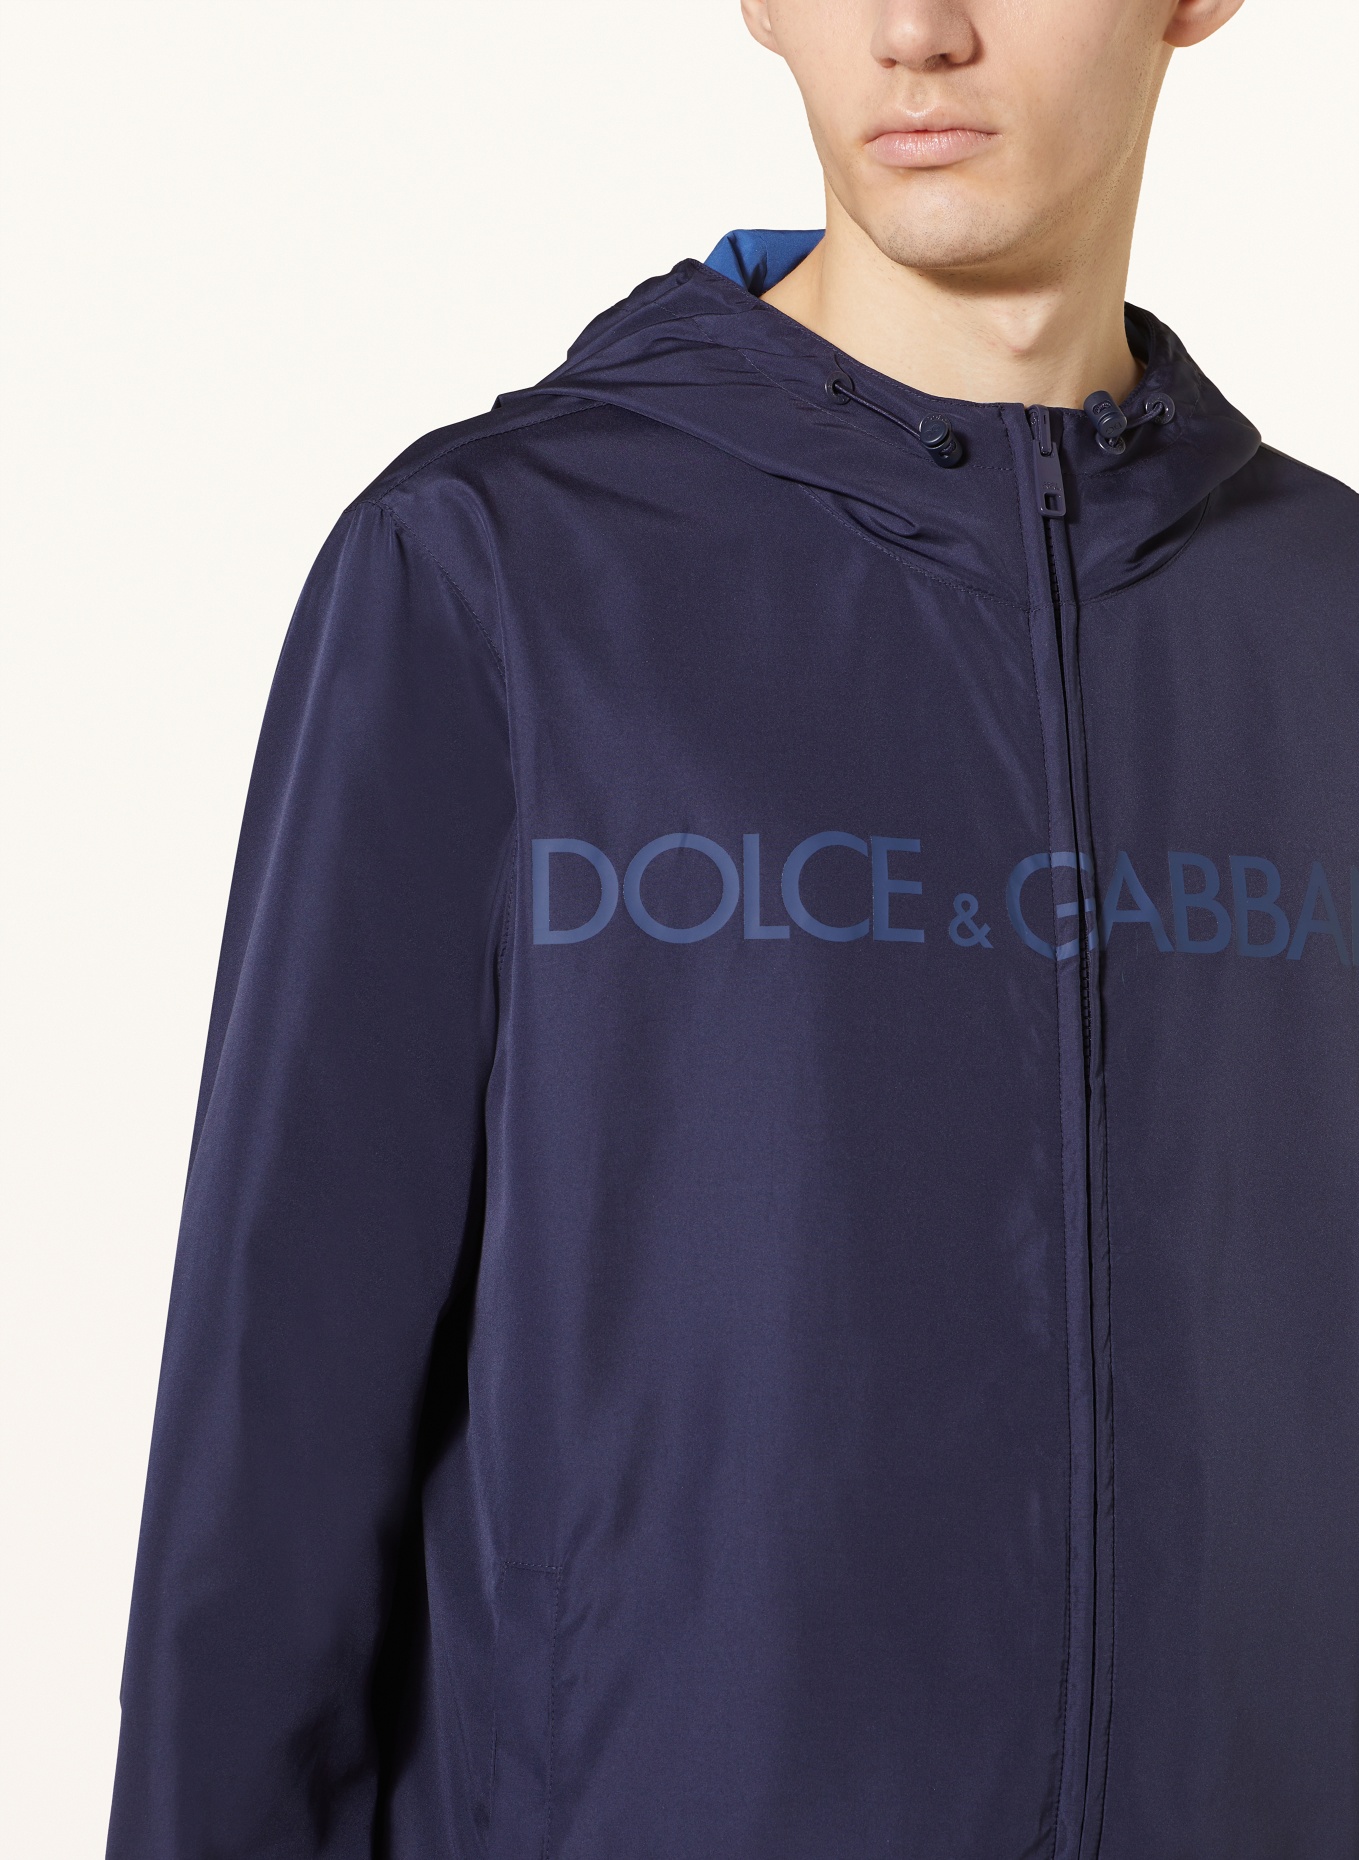 DOLCE & GABBANA Reversible jacket, Color: DARK BLUE (Image 5)